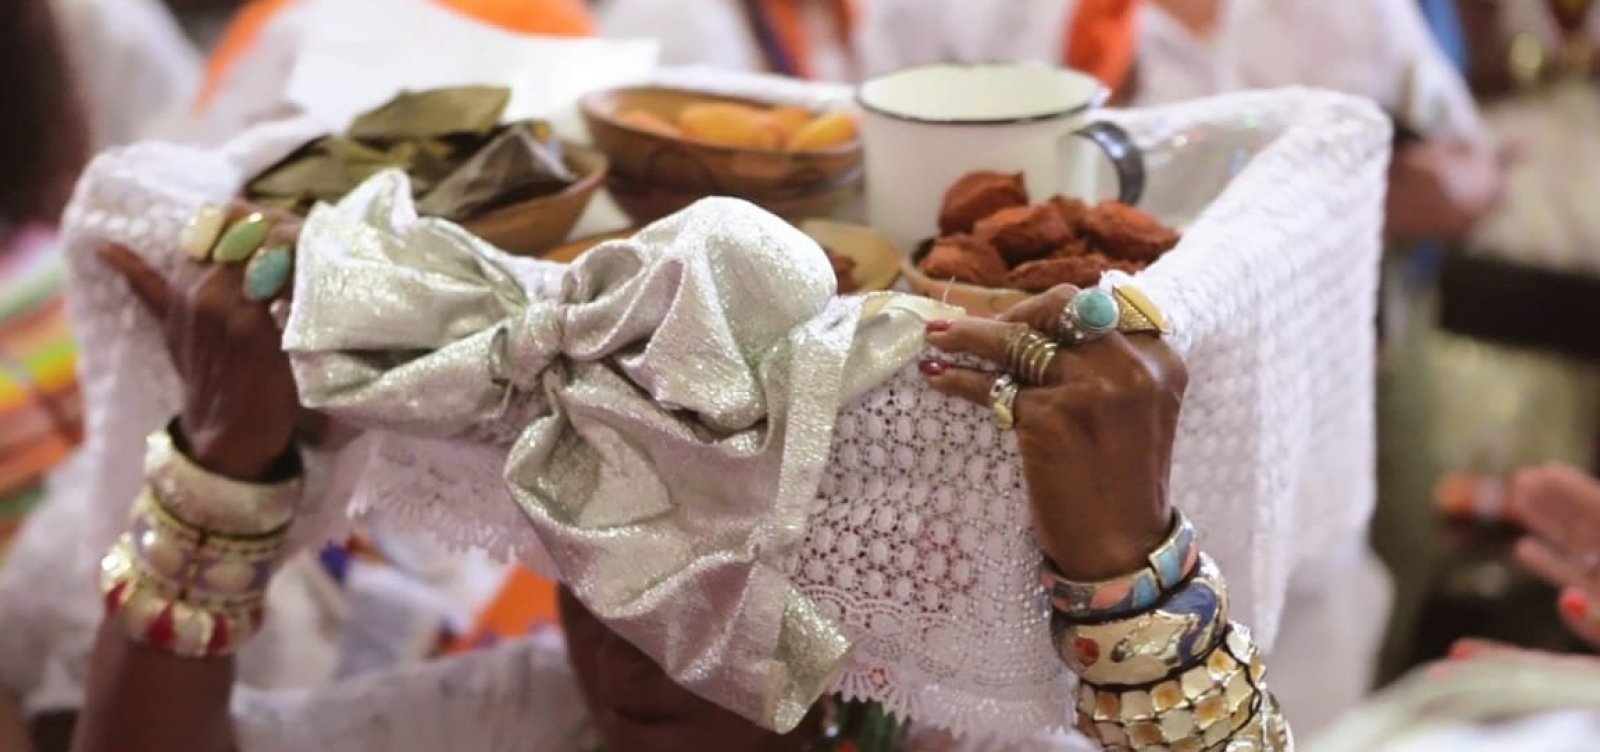 Documentário aborda intolerância religiosa e revela polêmica sobre o acarajé